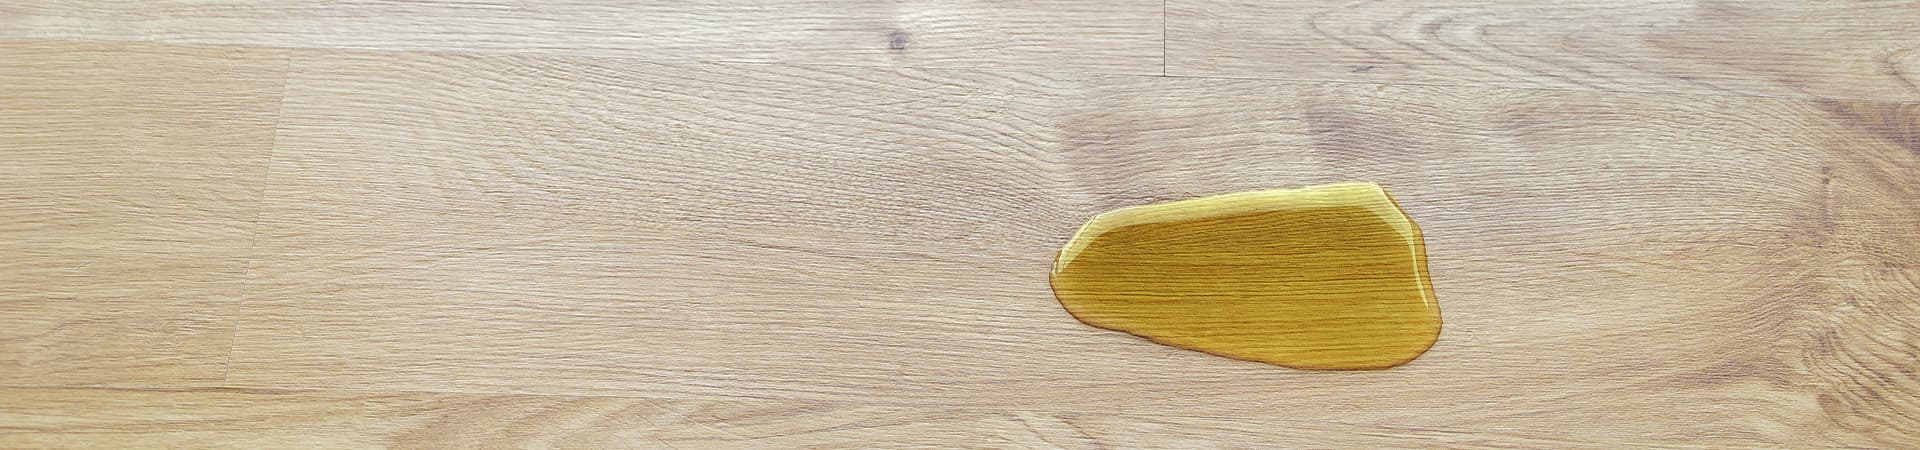 Eine Urinpfütze auf einem braunen Holzboden